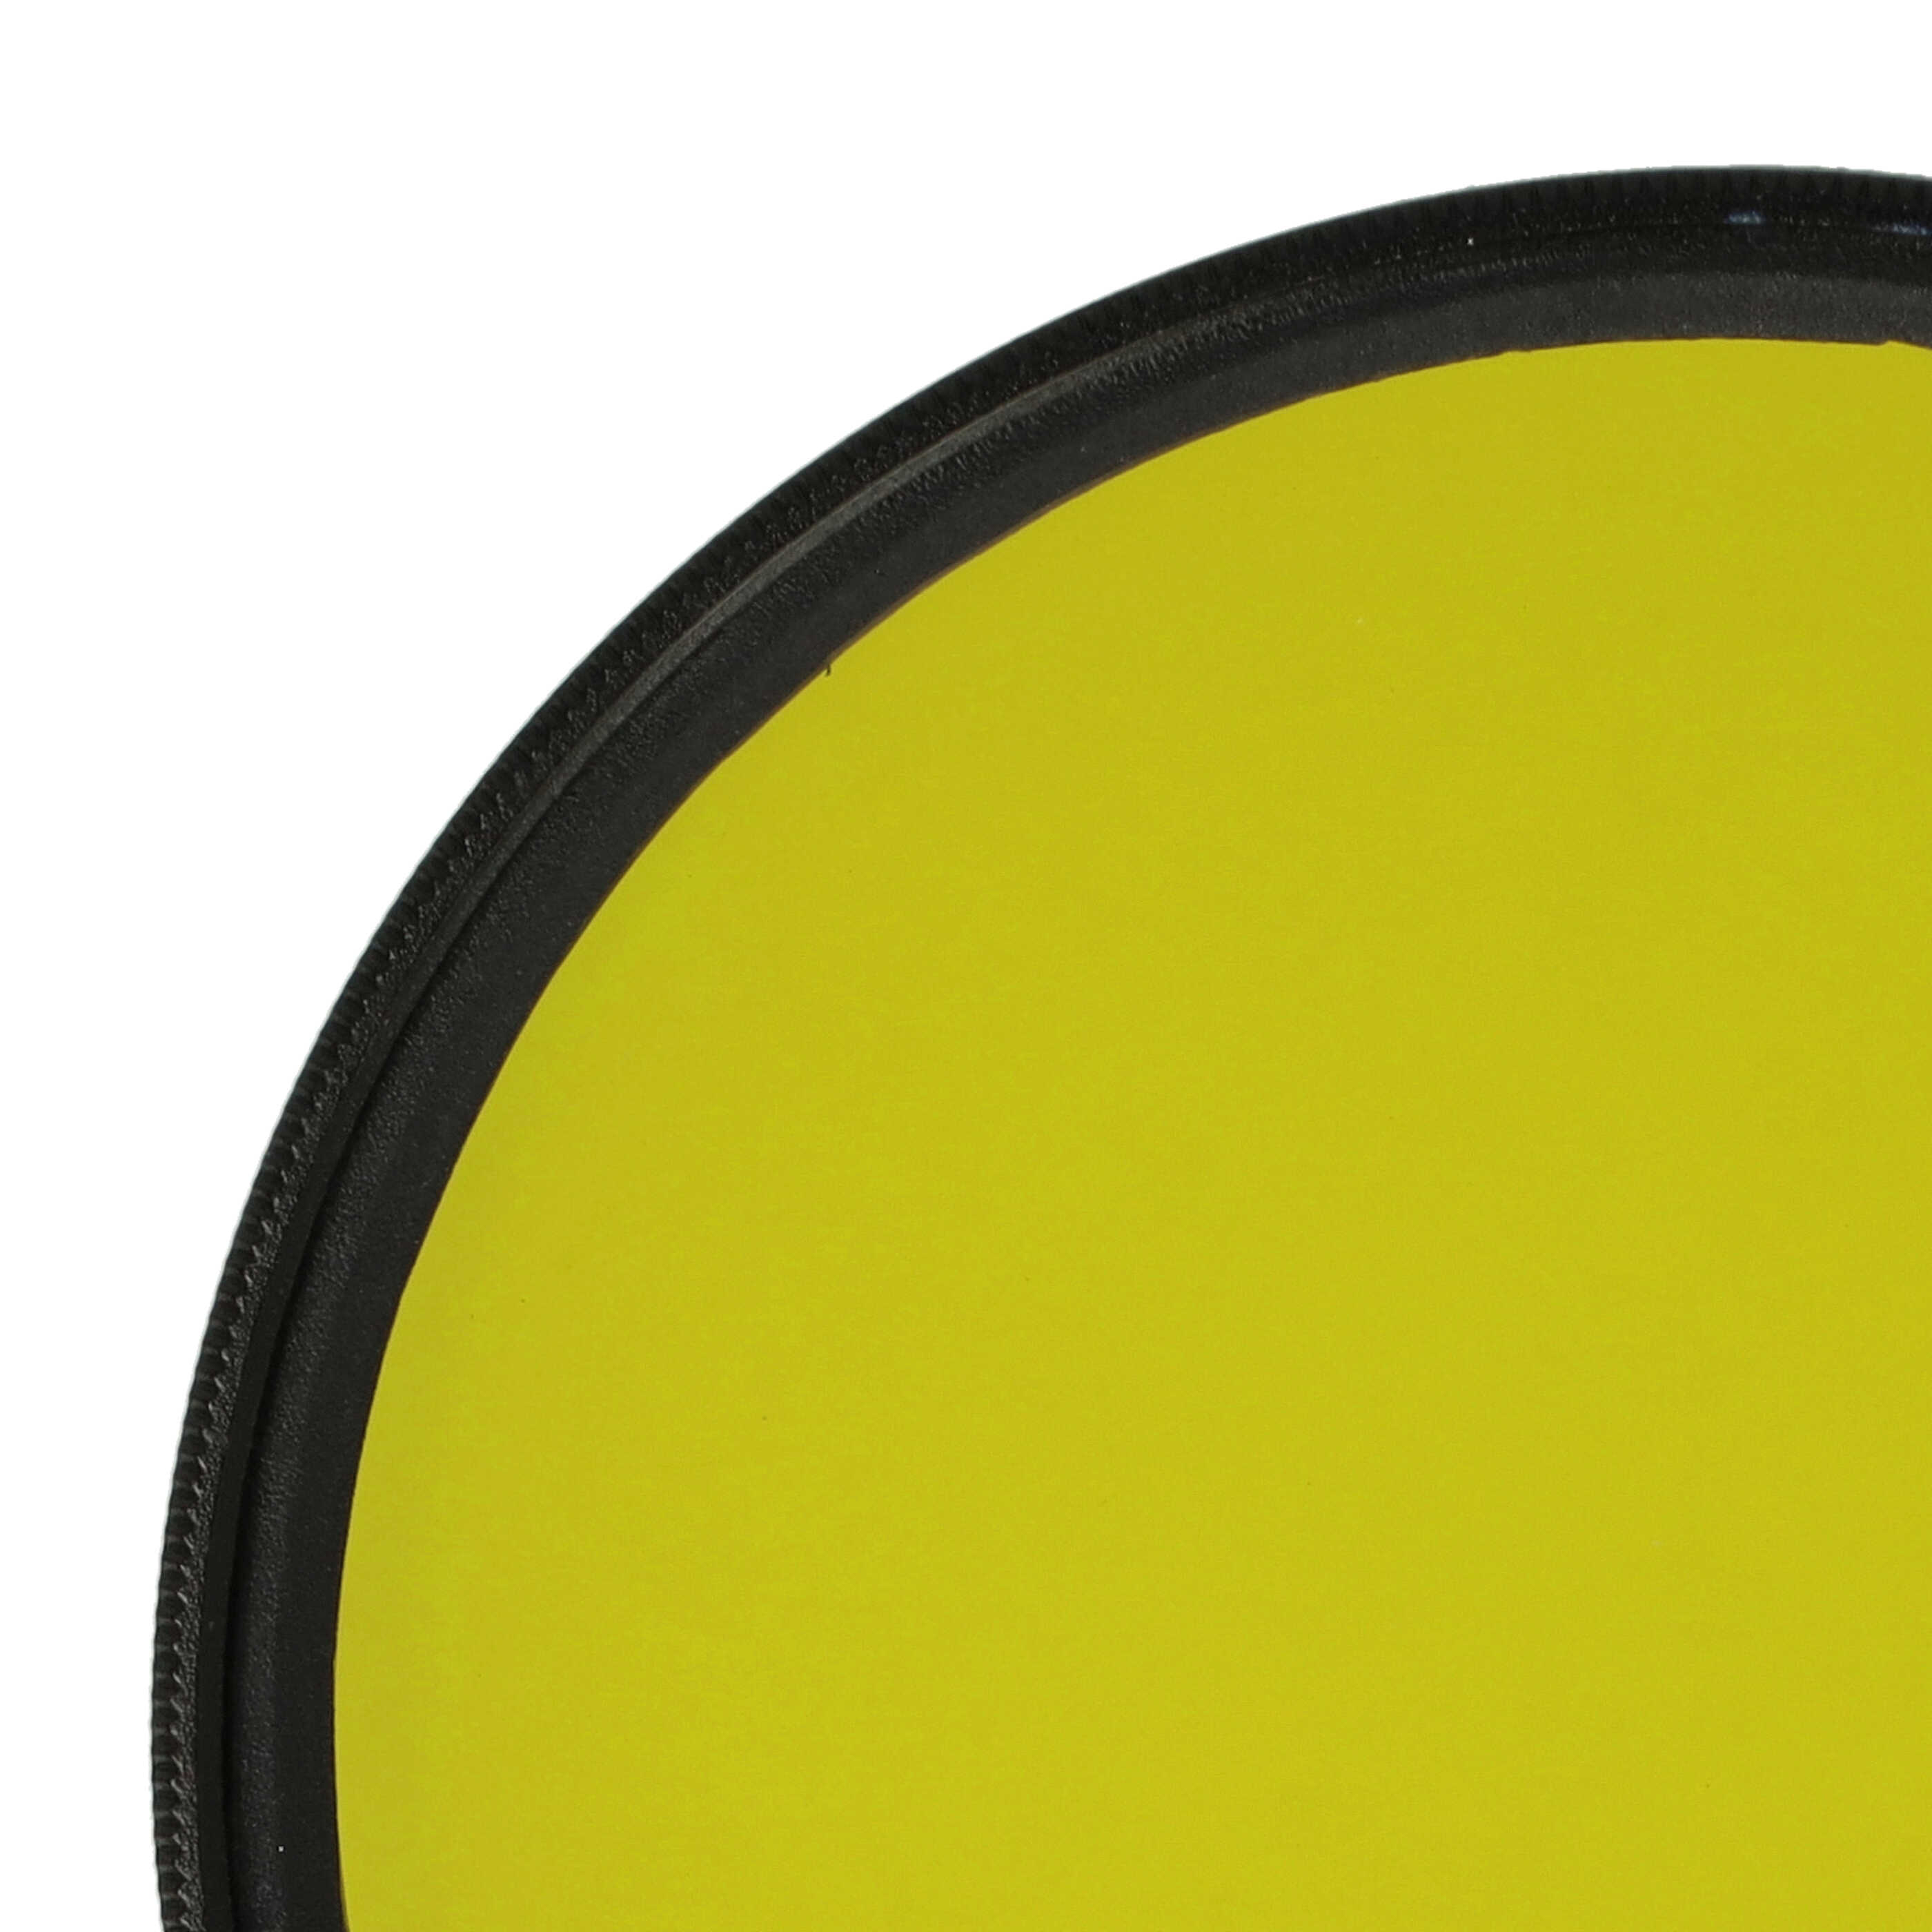 Filtro colorato per obiettivi fotocamera con filettatura da 67 mm - filtro giallo